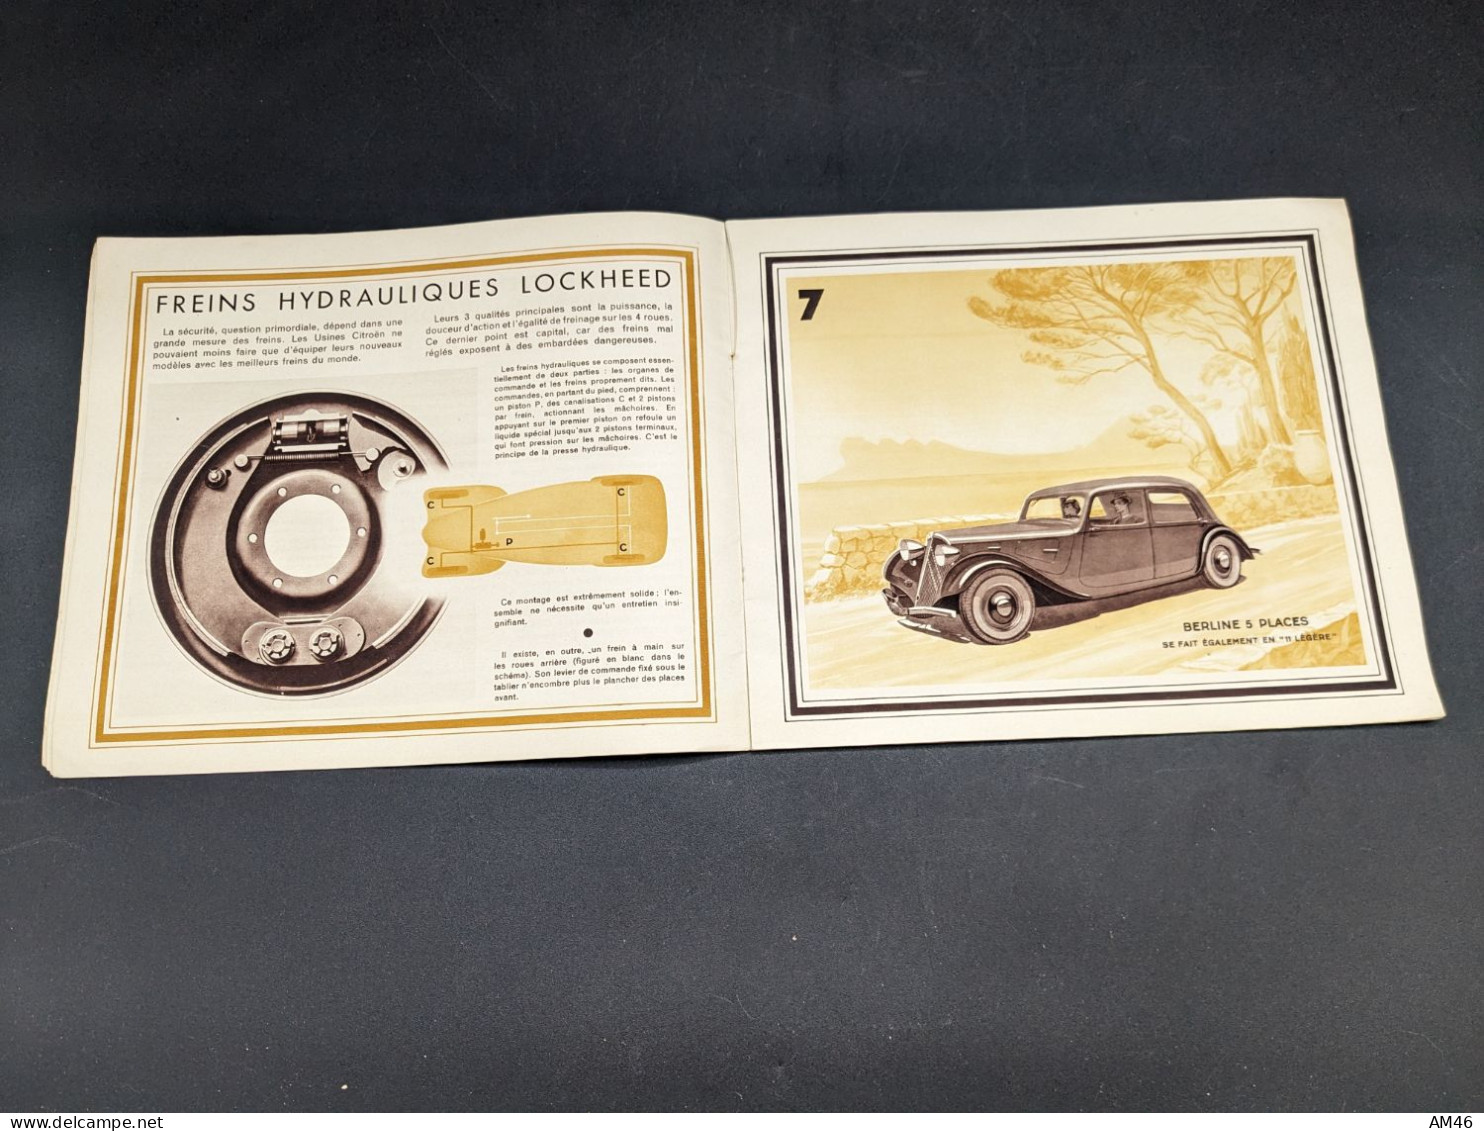 Rare Catalogue Dépliant Citroën Tout Modèle 1935 Traction Avant - Advertising